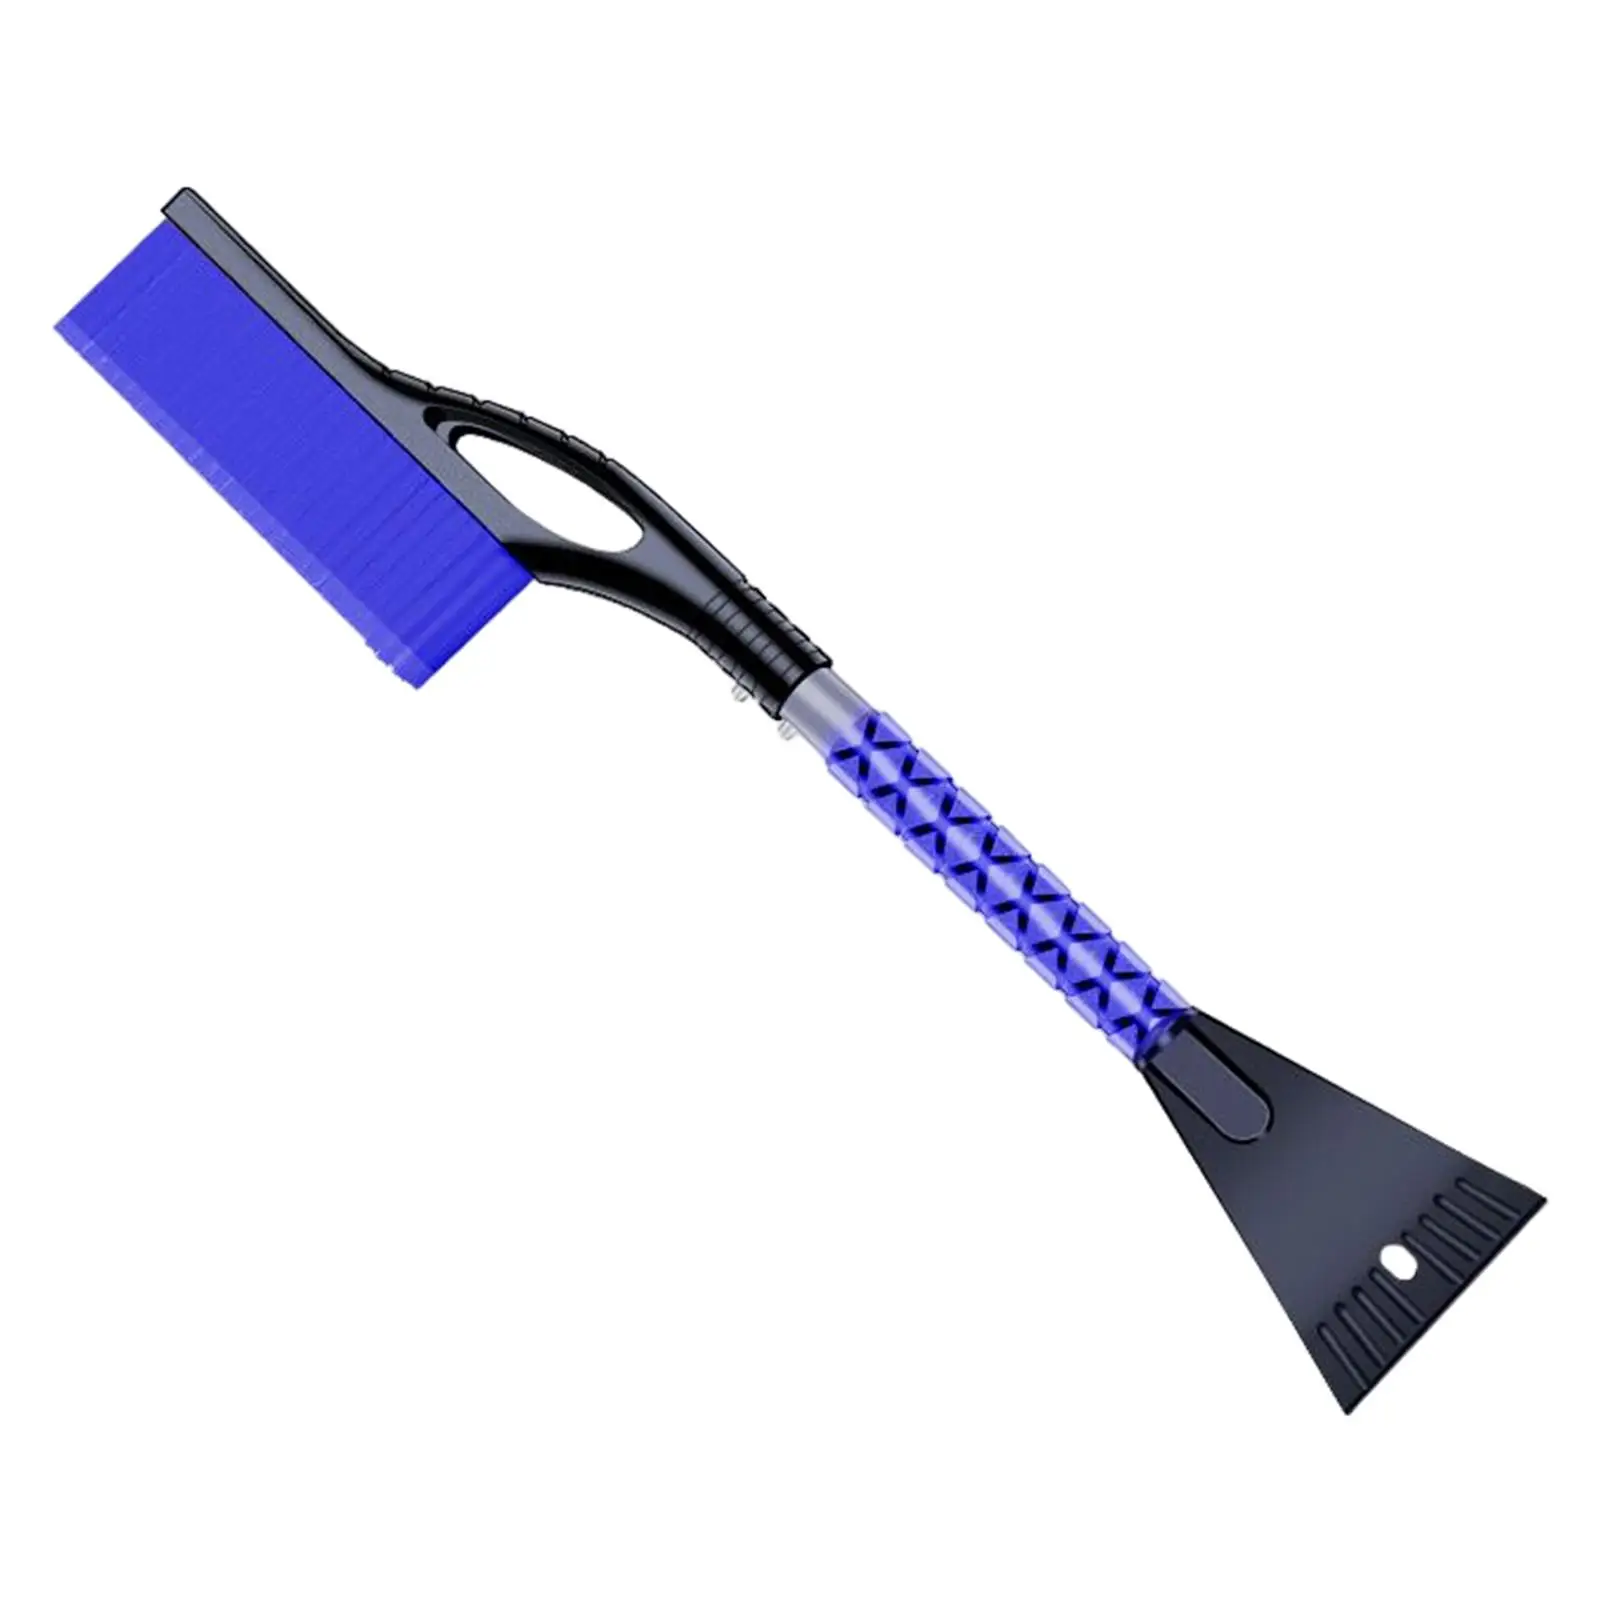 Snow Brush & Snow Shovel Multipurpose Extendable Lightweight for Car Windshield